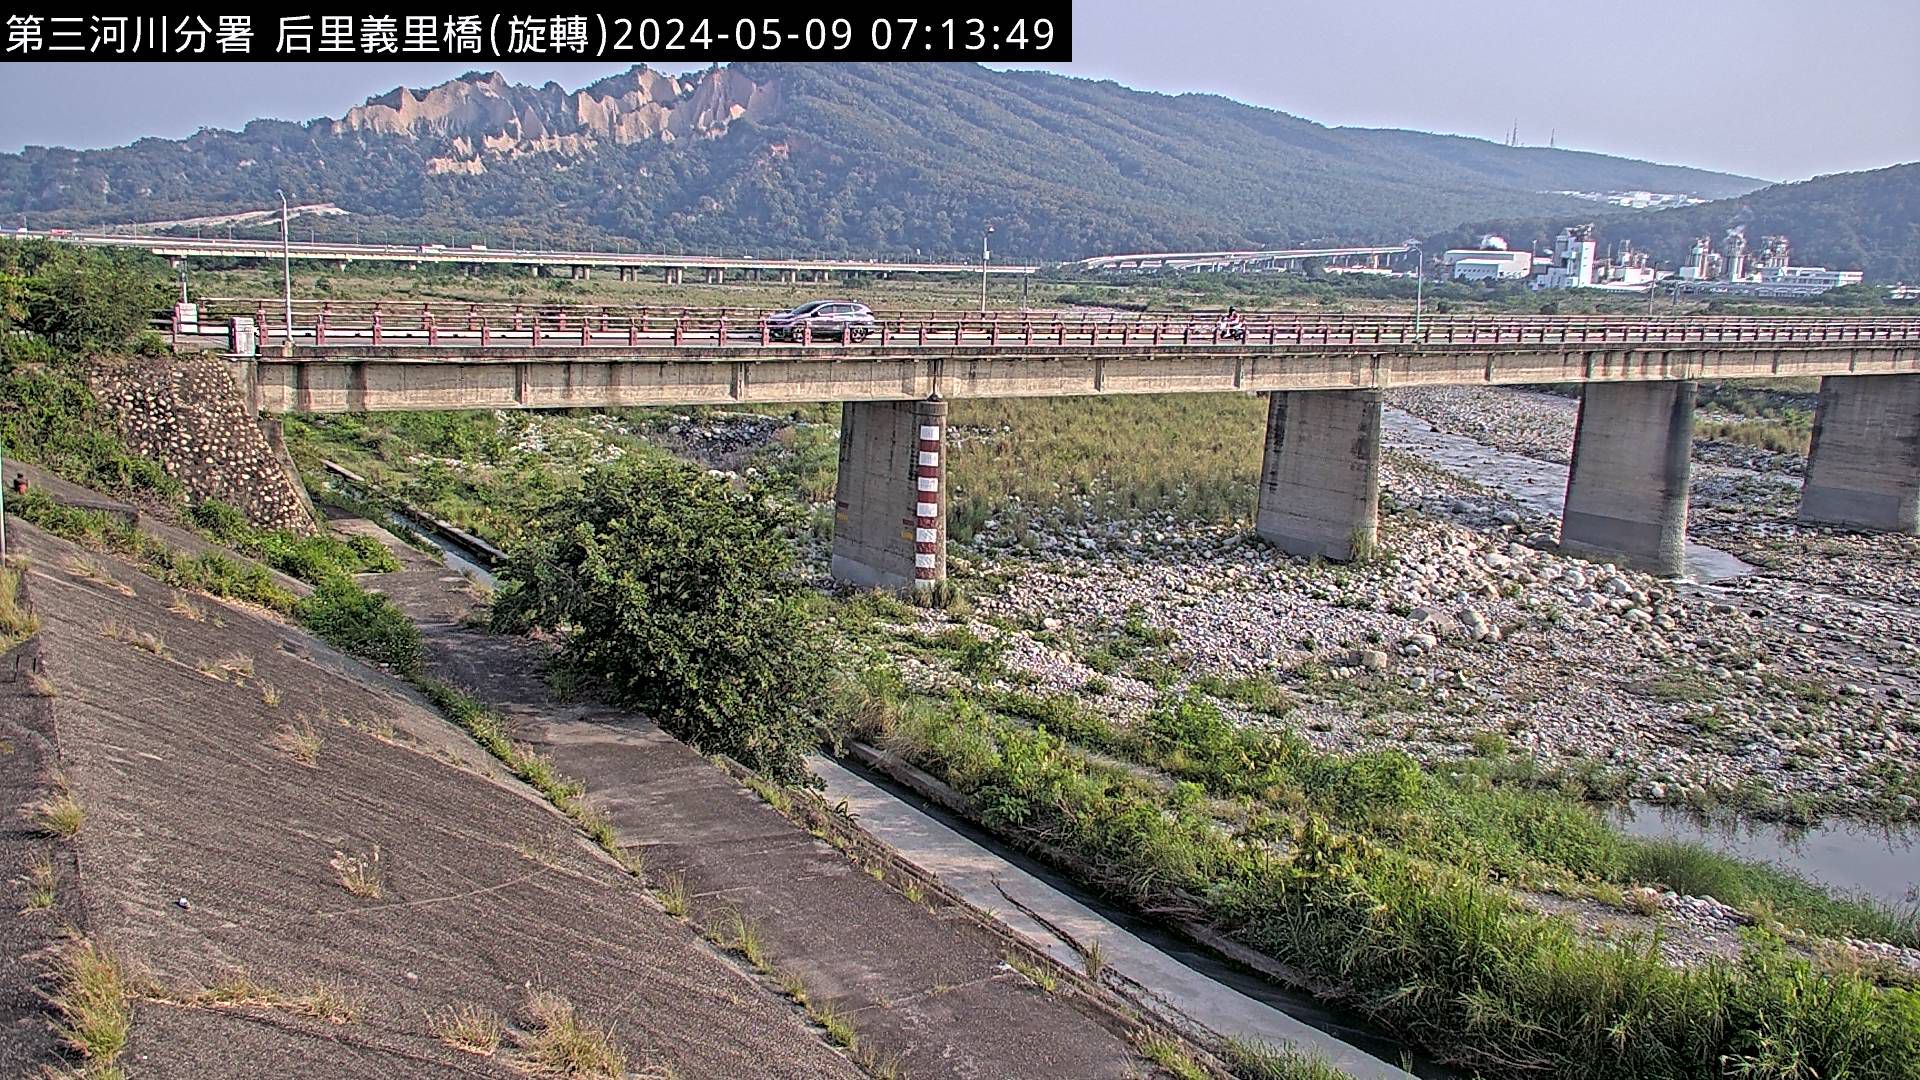 水利署水資源  防災中心 義里橋 距離1.5公里 氣溫22.6度